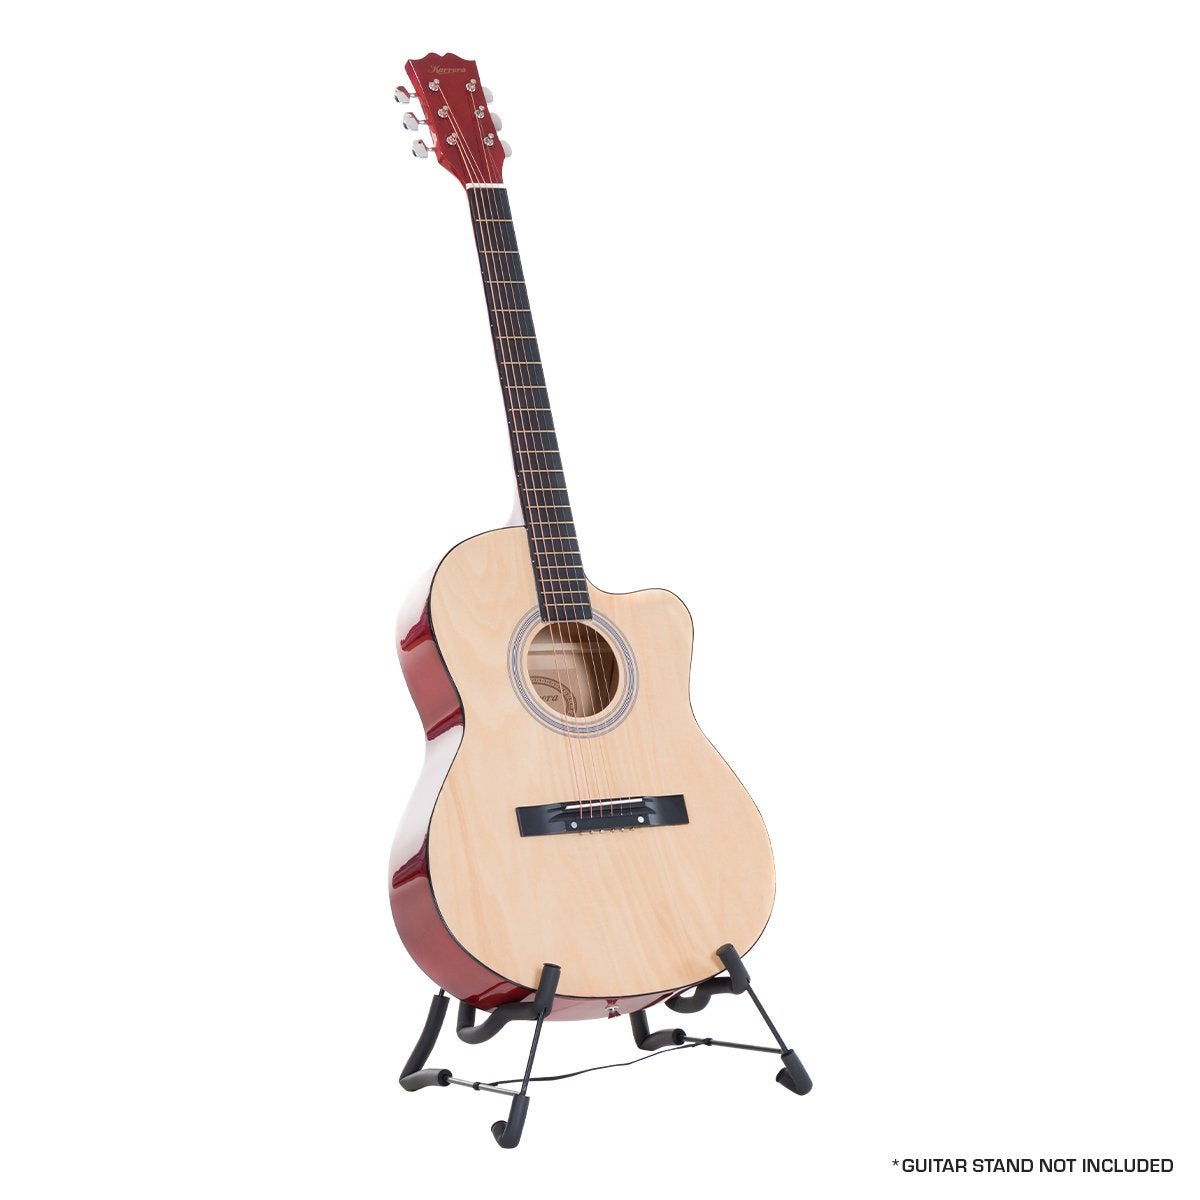 New 40in Karrera Acoustic Cutaway Guitar Bag Strings Picks Winder Strap Natural